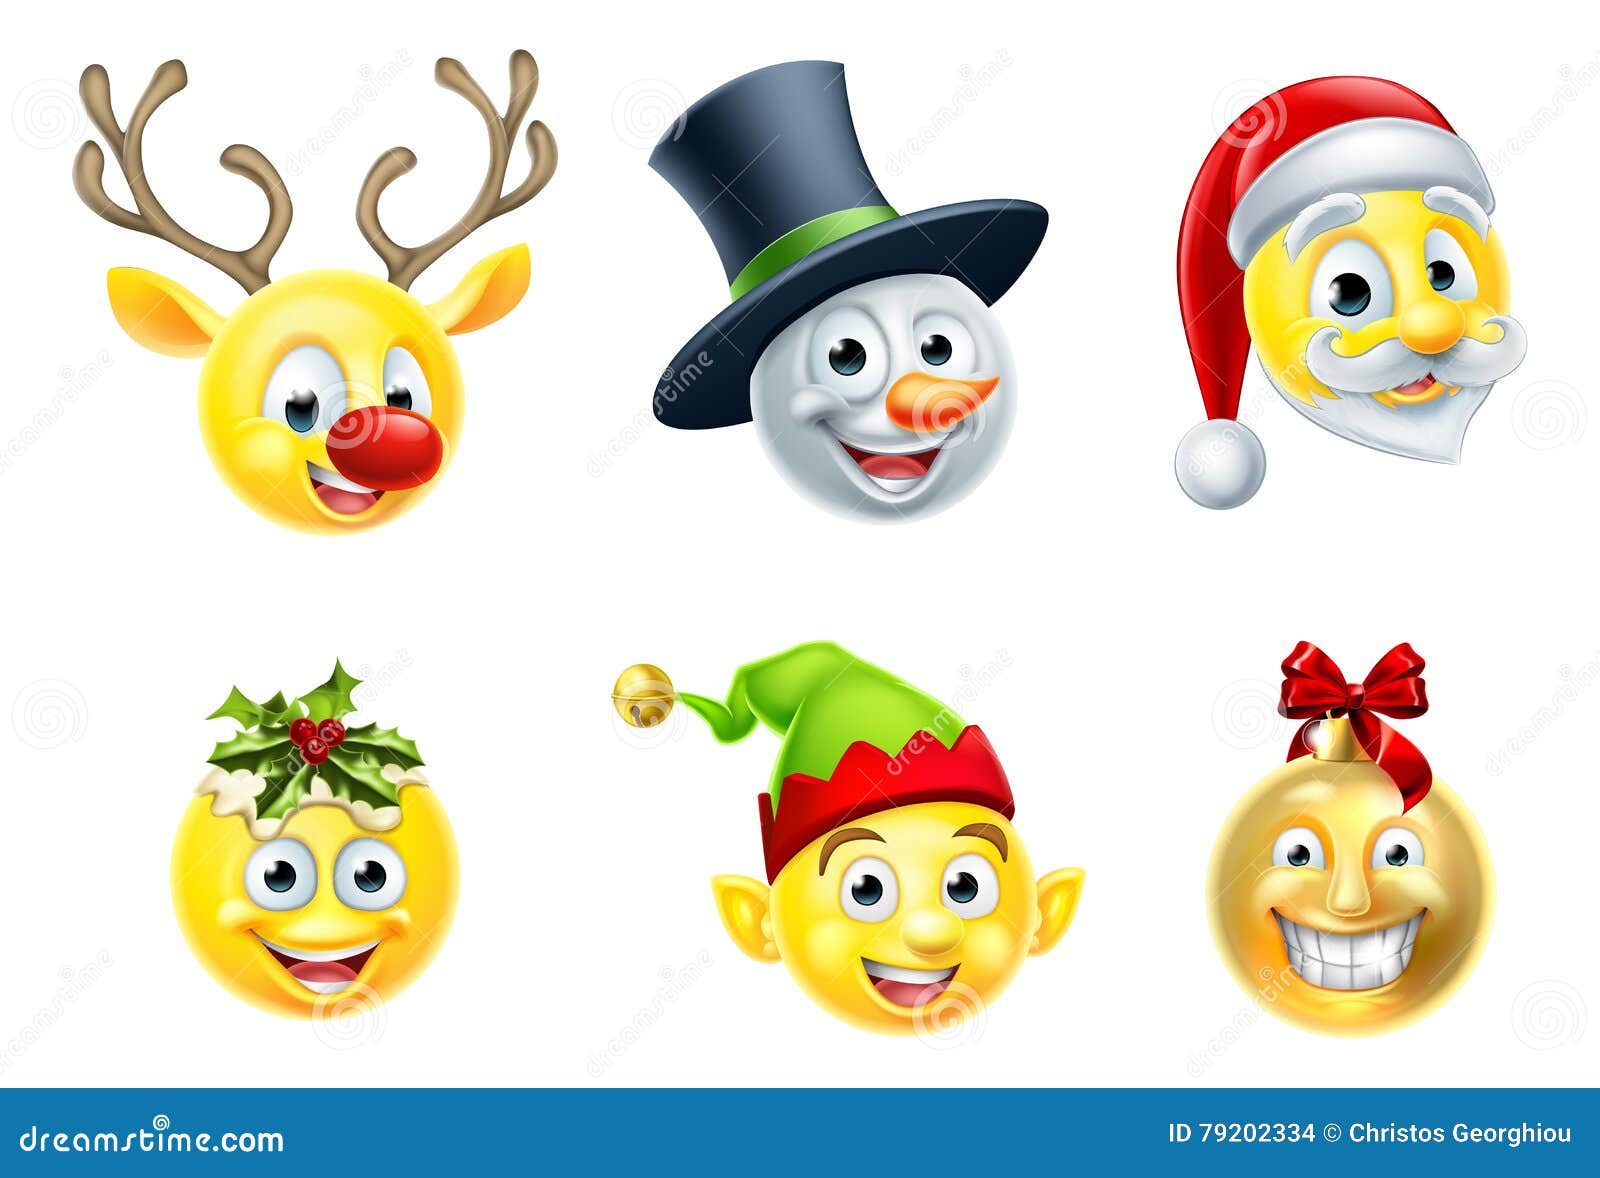 Emoticon Di Natale.Insieme Di Emoji Di Natale Illustrazione Vettoriale Illustrazione Di Icona 79202334